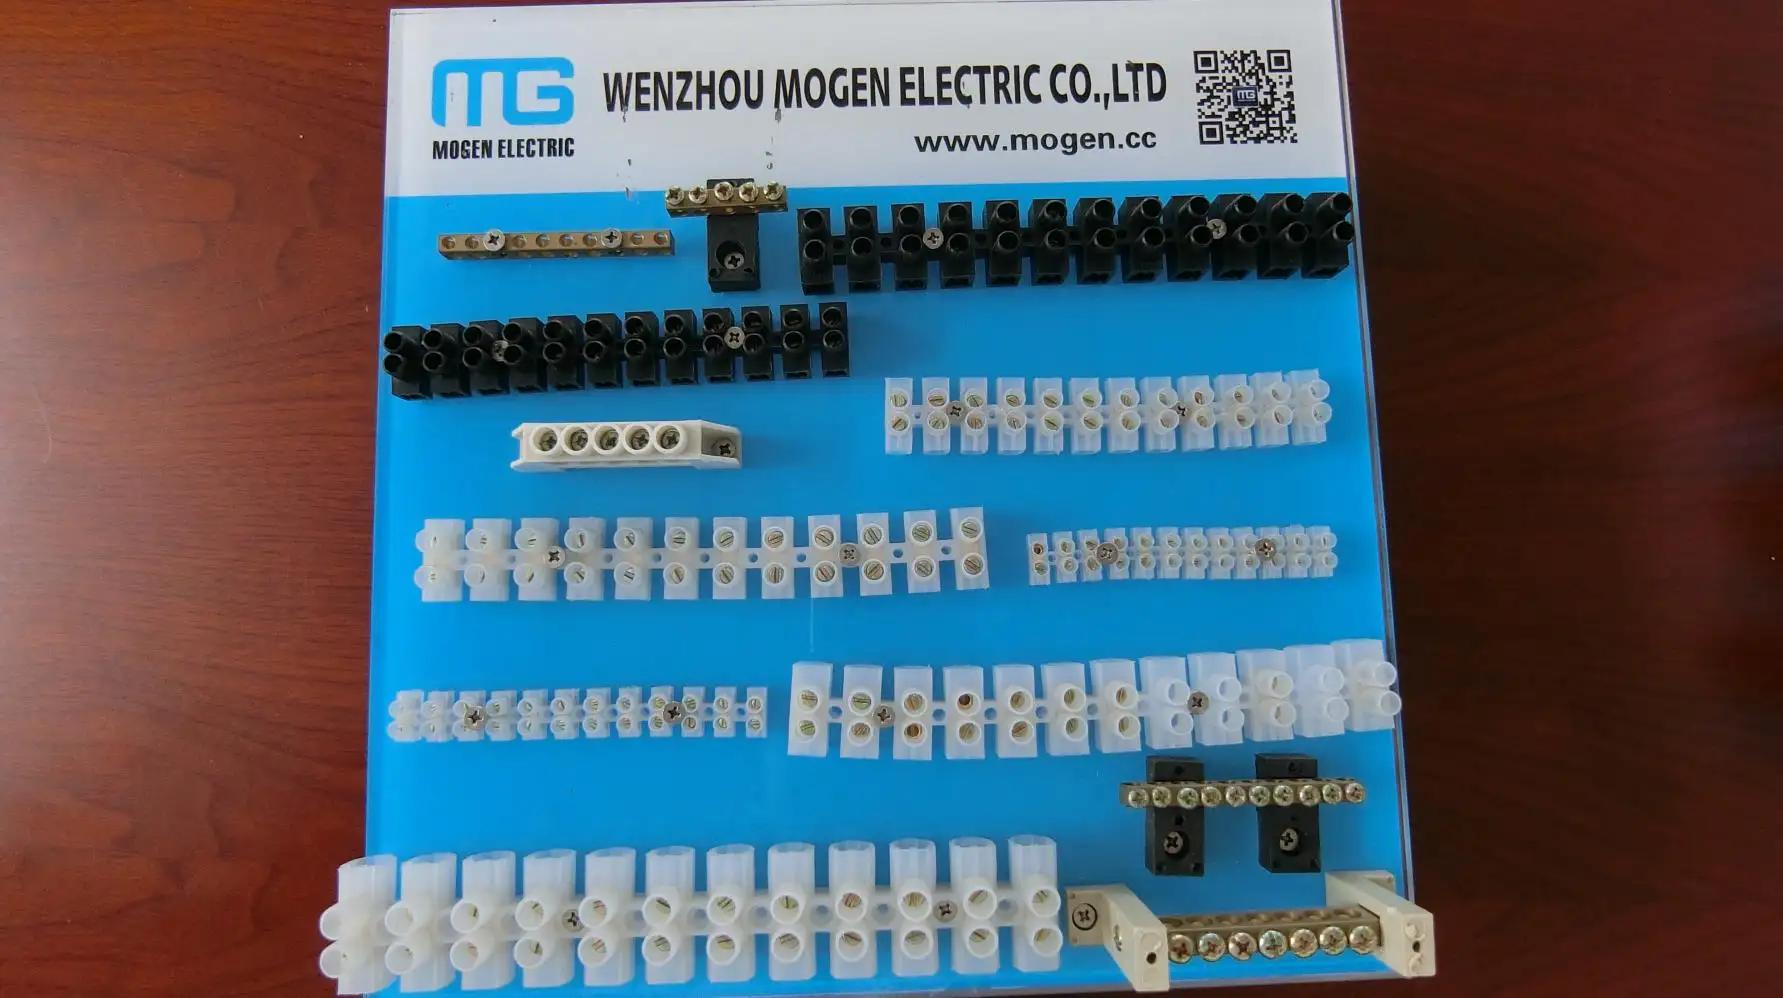 Wenzhou Mogen Electric Co., Ltd.